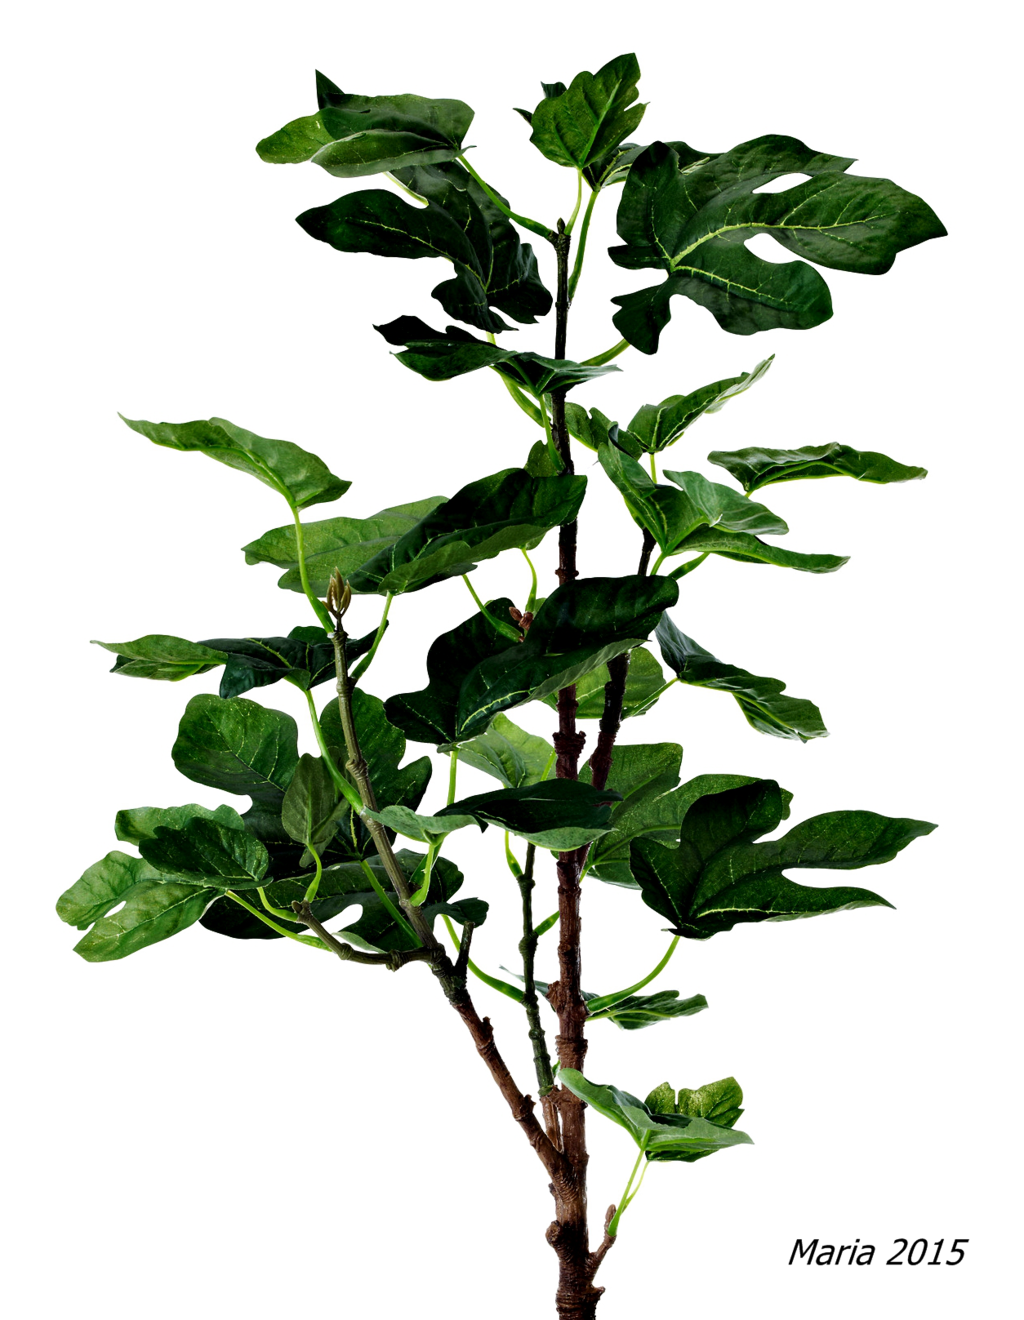 Abbildung: Ficus Benjamina